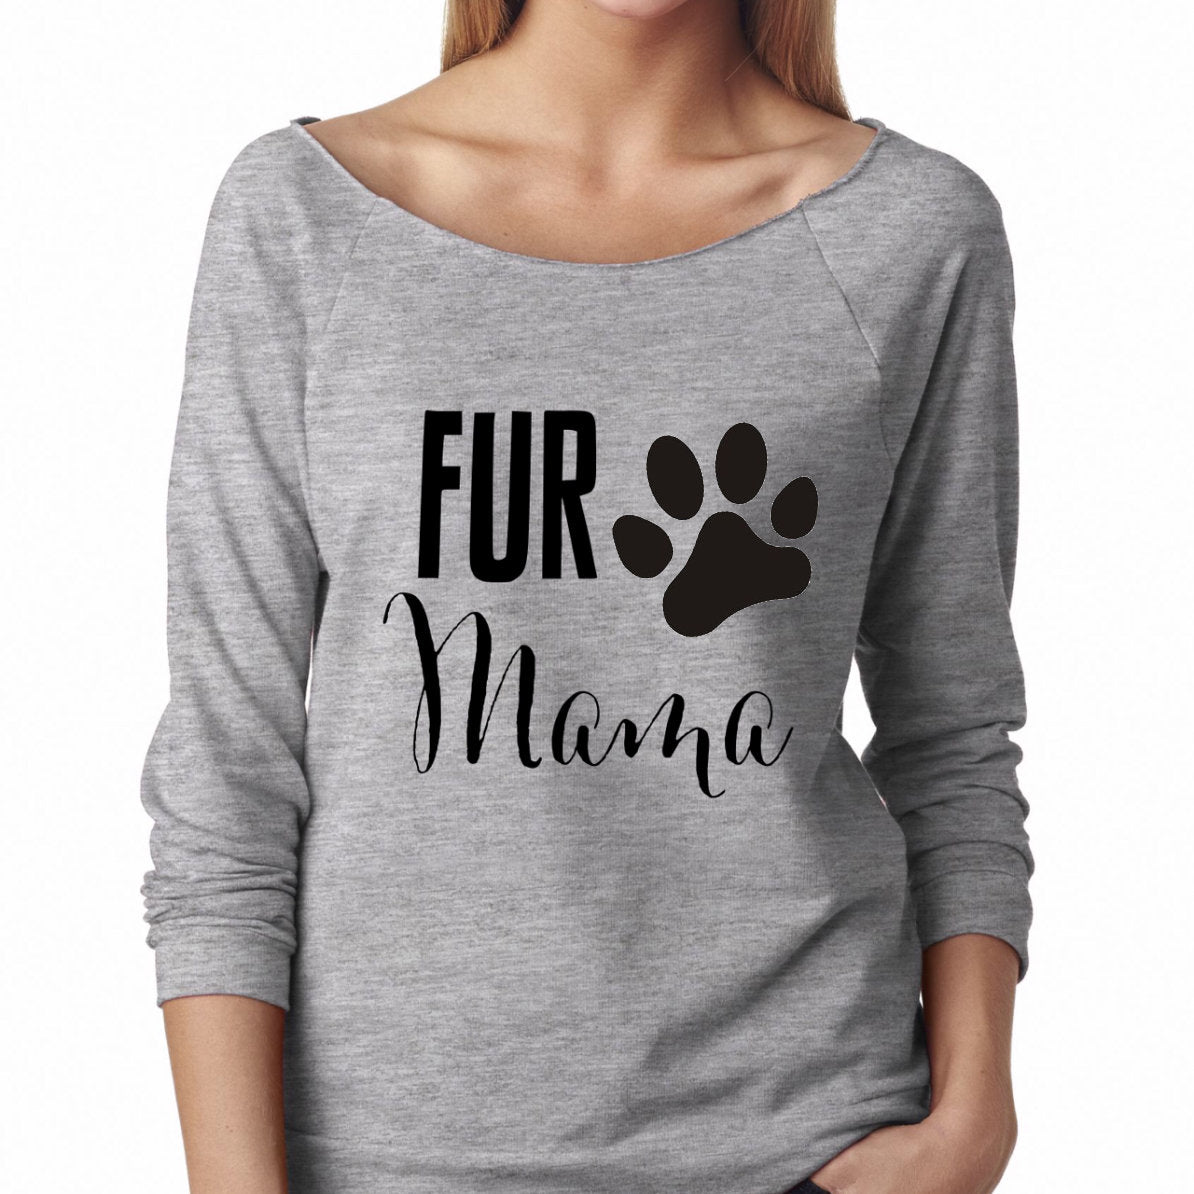 Fur mama shirt| Dog mom shirt| Dog lover shirt| Dog lover gift| Gift for her| Gift for Dog mom| Dogs before dudes t-shirt| Dog mama